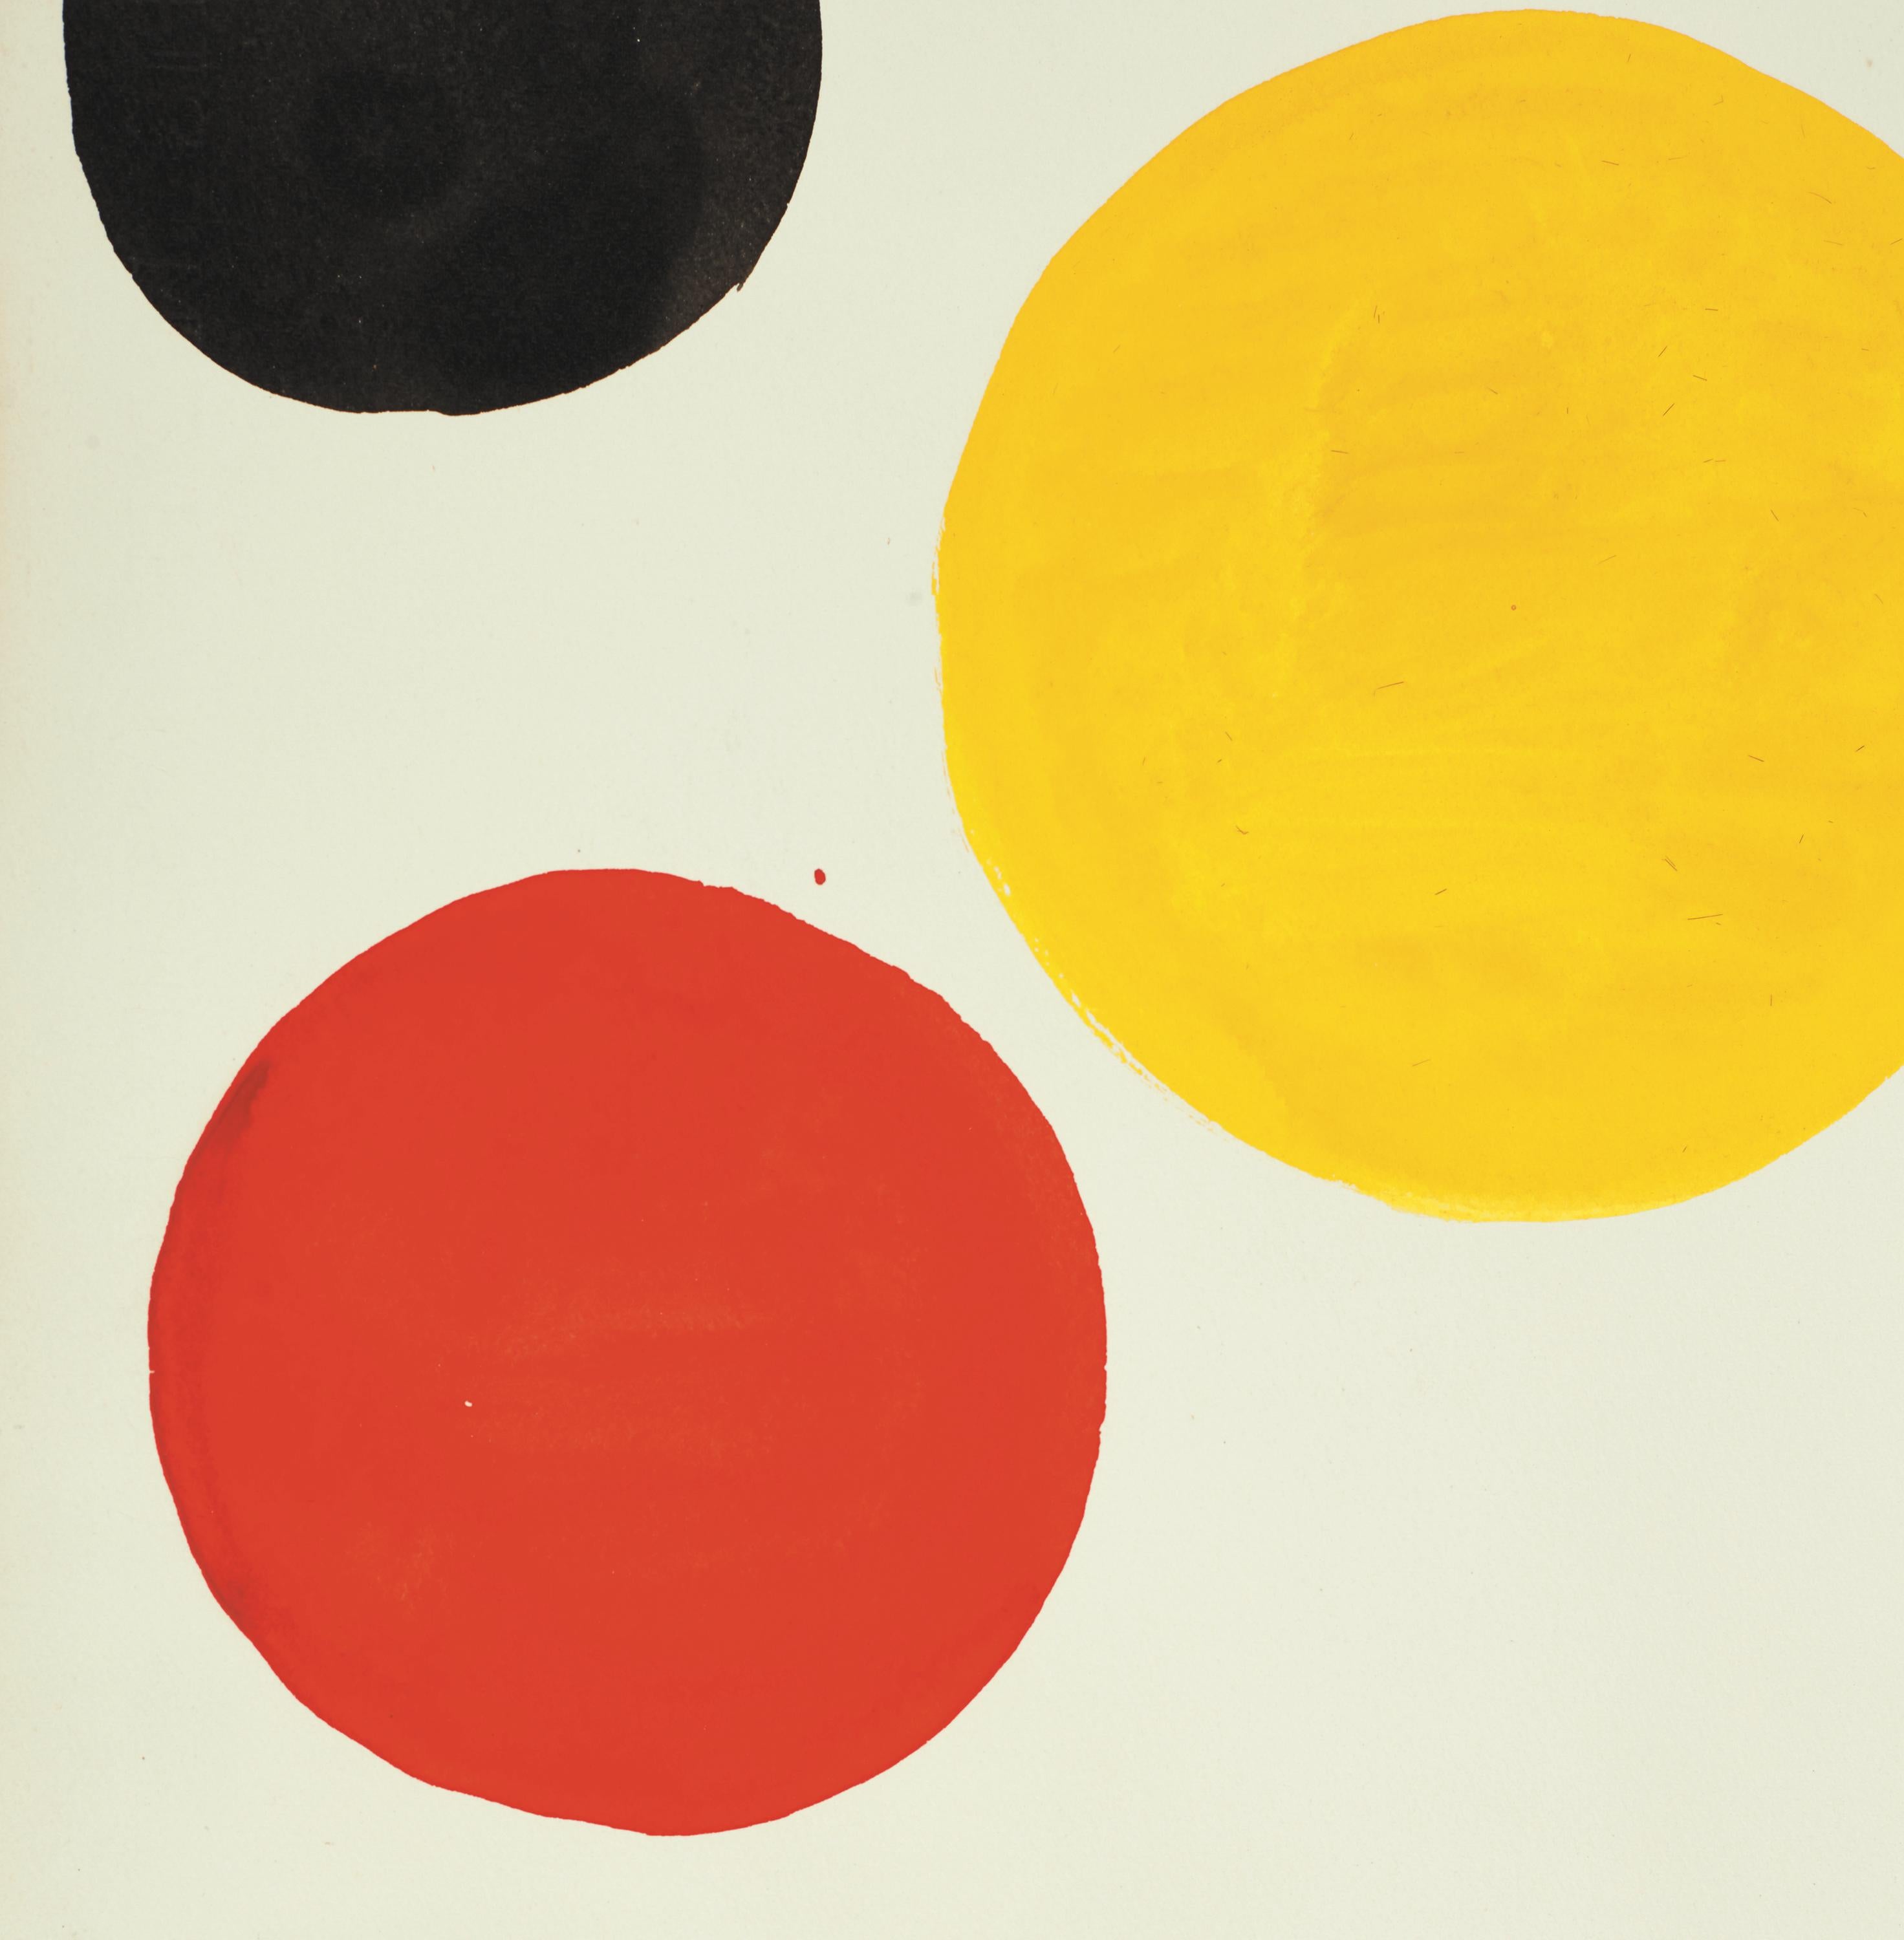 Koloniale Organismen (Nachkriegszeit), Painting, von Alexander Calder